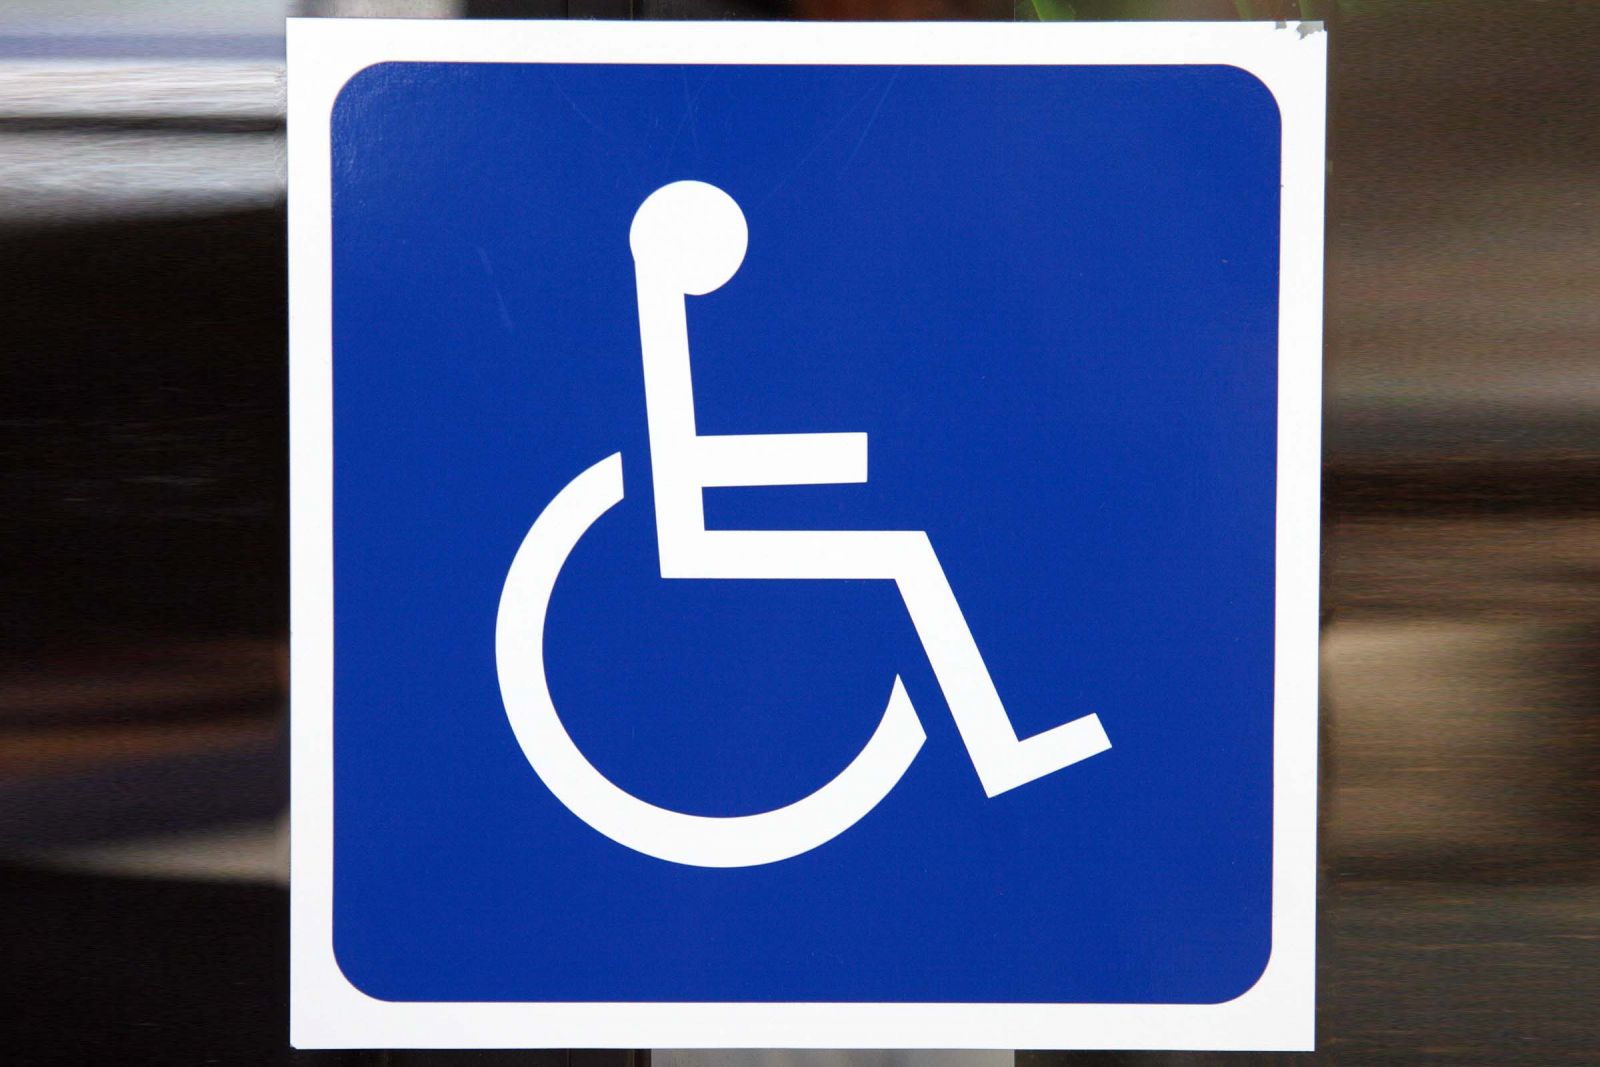 شرایط پلاک ویژه معلولان اعلام شد / مناسب سازی خودرو و مسکن معلولان